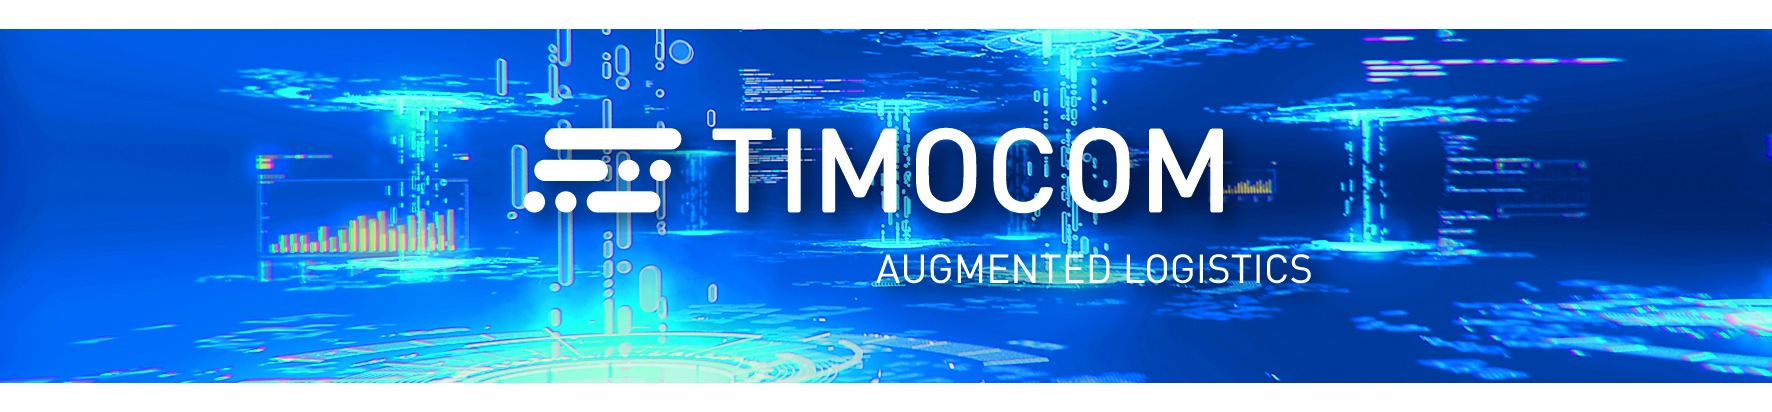 TIMOCOM wächst zweistellig: Digitale Lösungen für die Transportwelt als Motor der Entwicklung